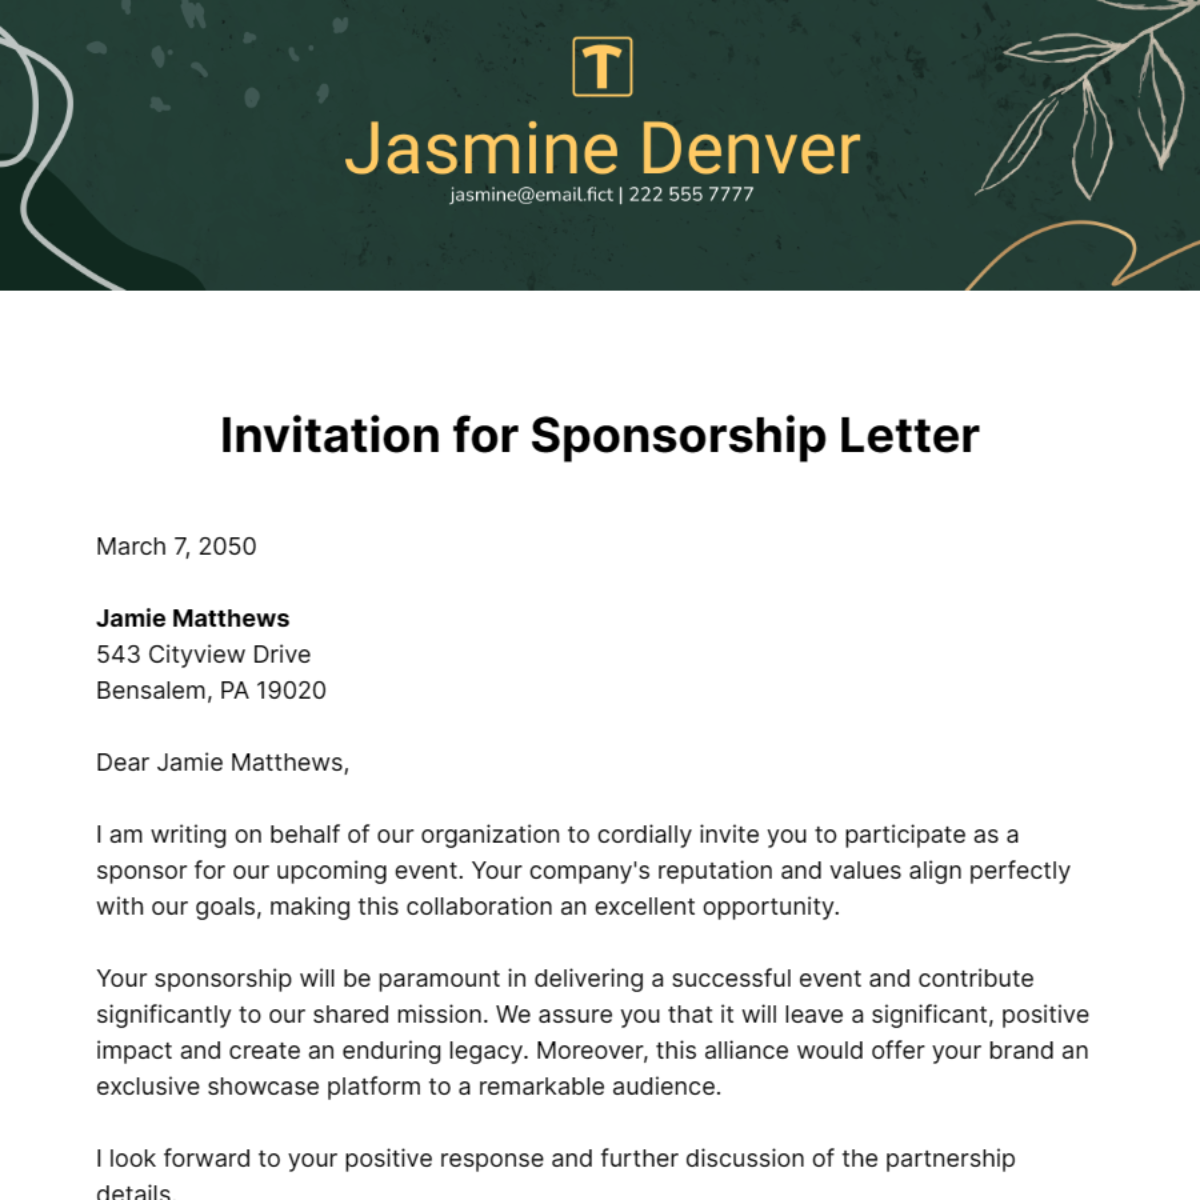 Invitation for Sponsorship Letter Template